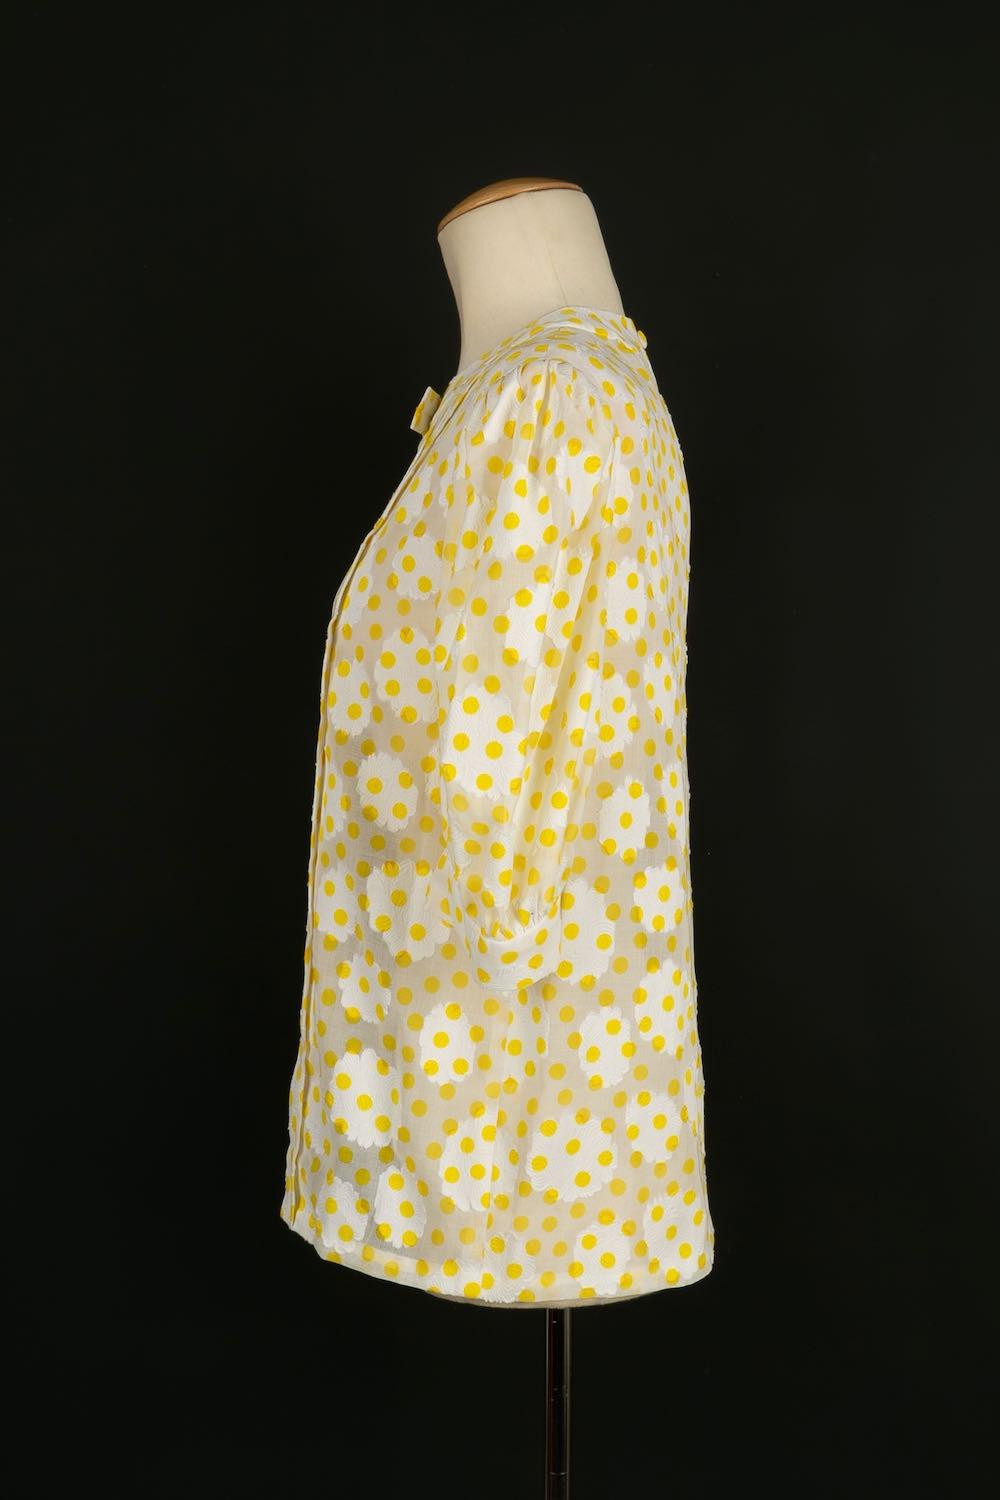 Hübsche weiße Vintage-Bluse mit gelben Tupfen. Kein Größenetikett, es passt einer 36FR.

Zusätzliche Informationen:
Zustand: Sehr guter Zustand
Abmessungen: Schulterbreite: 41 cm - Brustumfang: 44 cm - Ärmellänge: 34 cm - Länge: 58 cm

Sellers